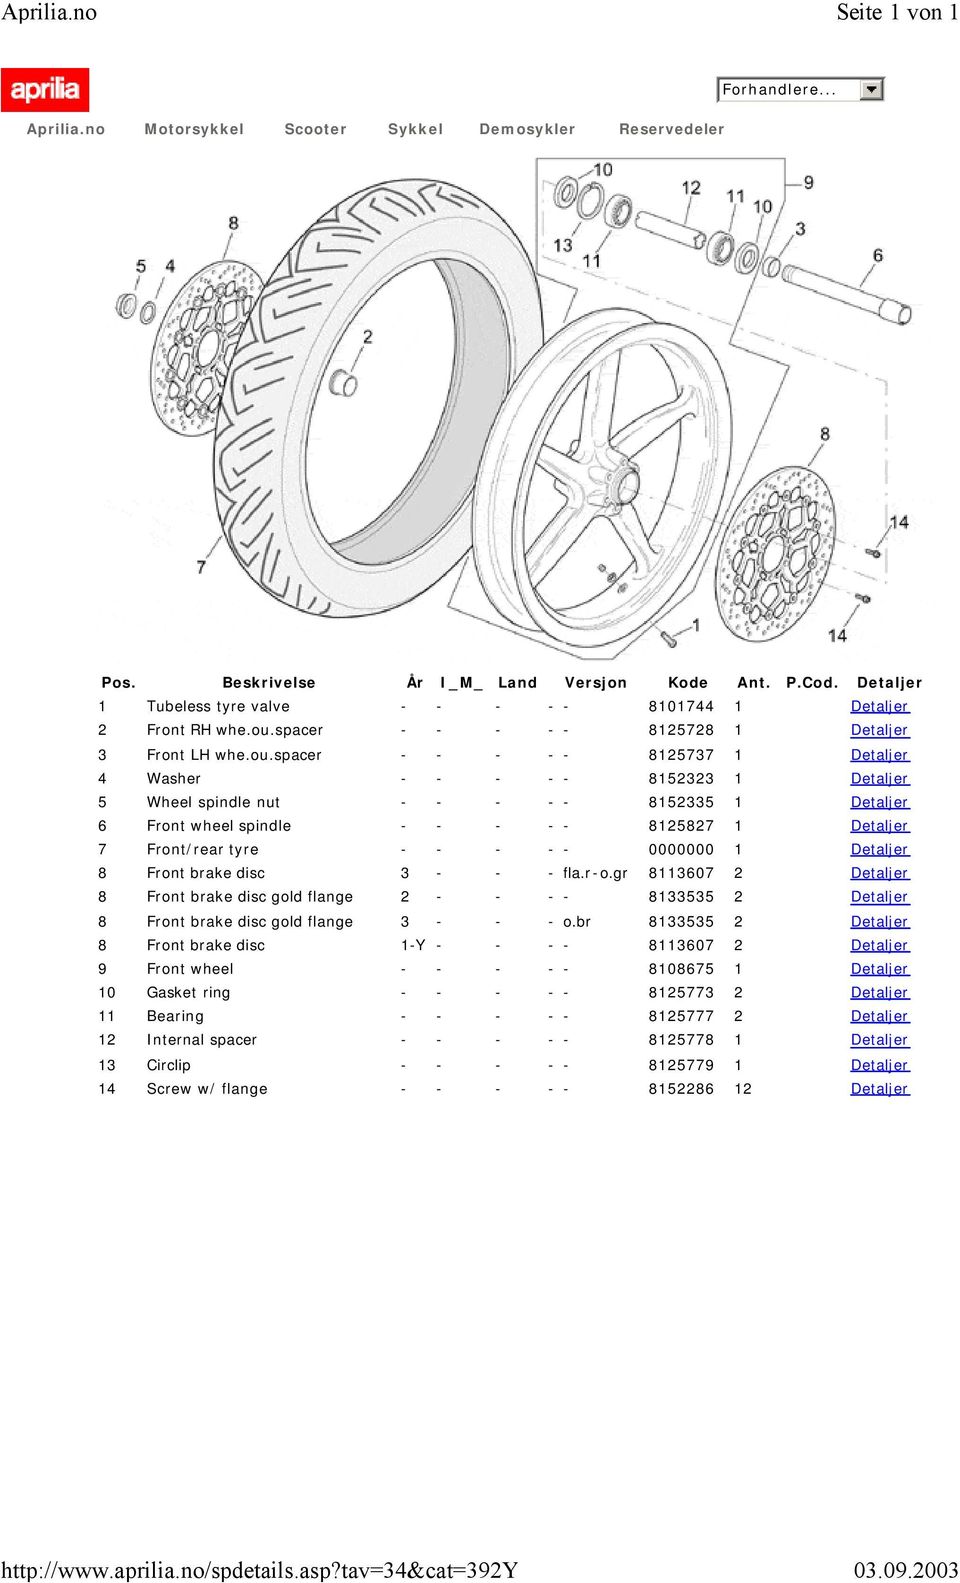 spacer - - - - - 8125737 1 Detaljer 4 Washer - - - - - 8152323 1 Detaljer 5 Wheel spindle nut - - - - - 8152335 1 Detaljer 6 Front wheel spindle - - - - - 8125827 1 Detaljer 7 Front/rear tyre - - - -